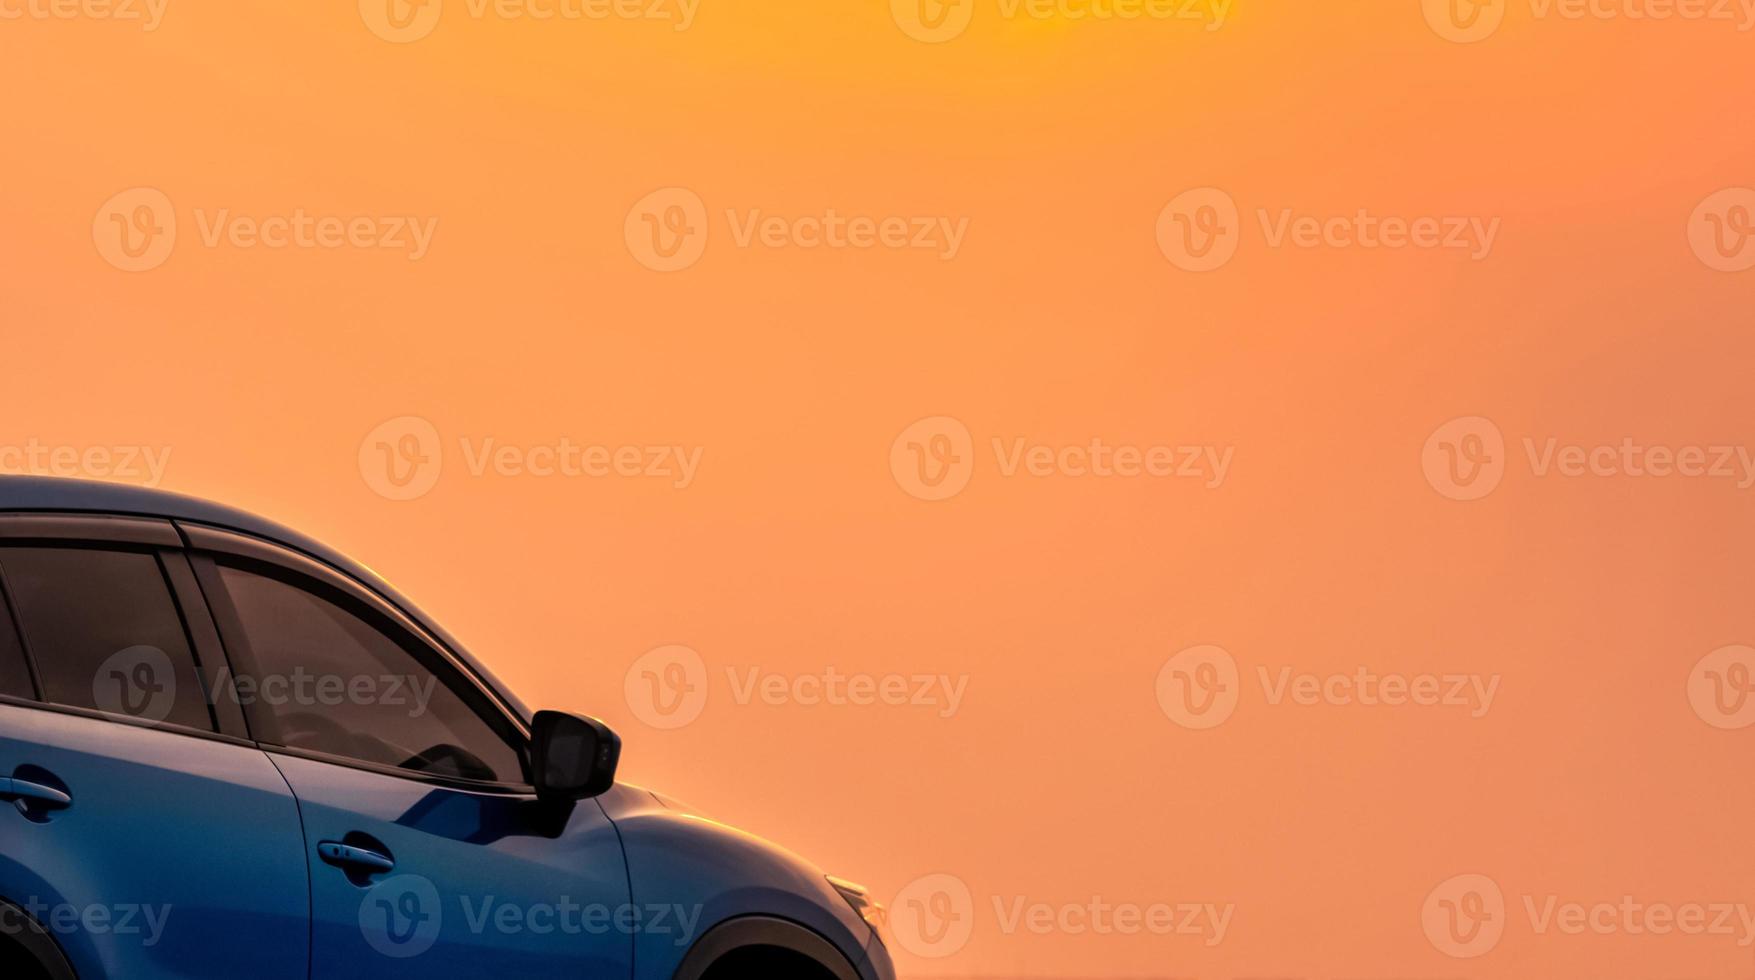 voiture suv compacte bleue au design sportif et moderne garée au bord de la mer avec un beau ciel orange au coucher du soleil. voyage en voiture. technologie et commerce des voitures électriques. l'automobile hybride et l'industrie automobile. photo